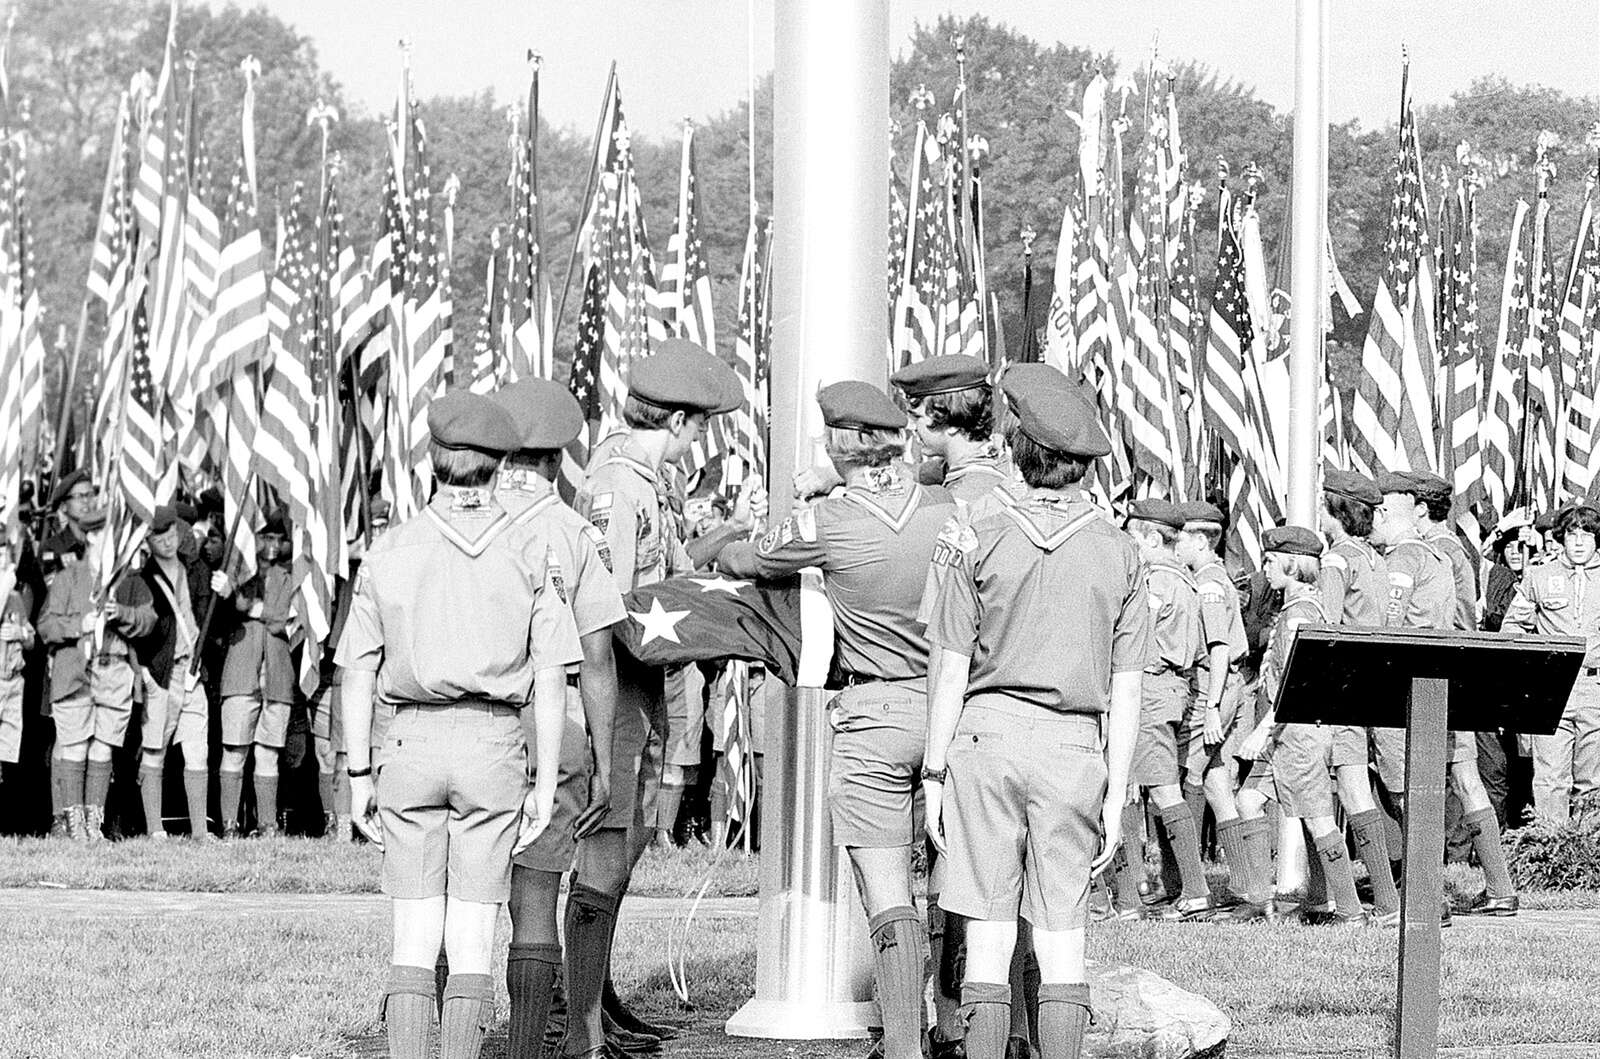 Vintage Boy Scout Uniform at 1973 National Scout Jamboree 